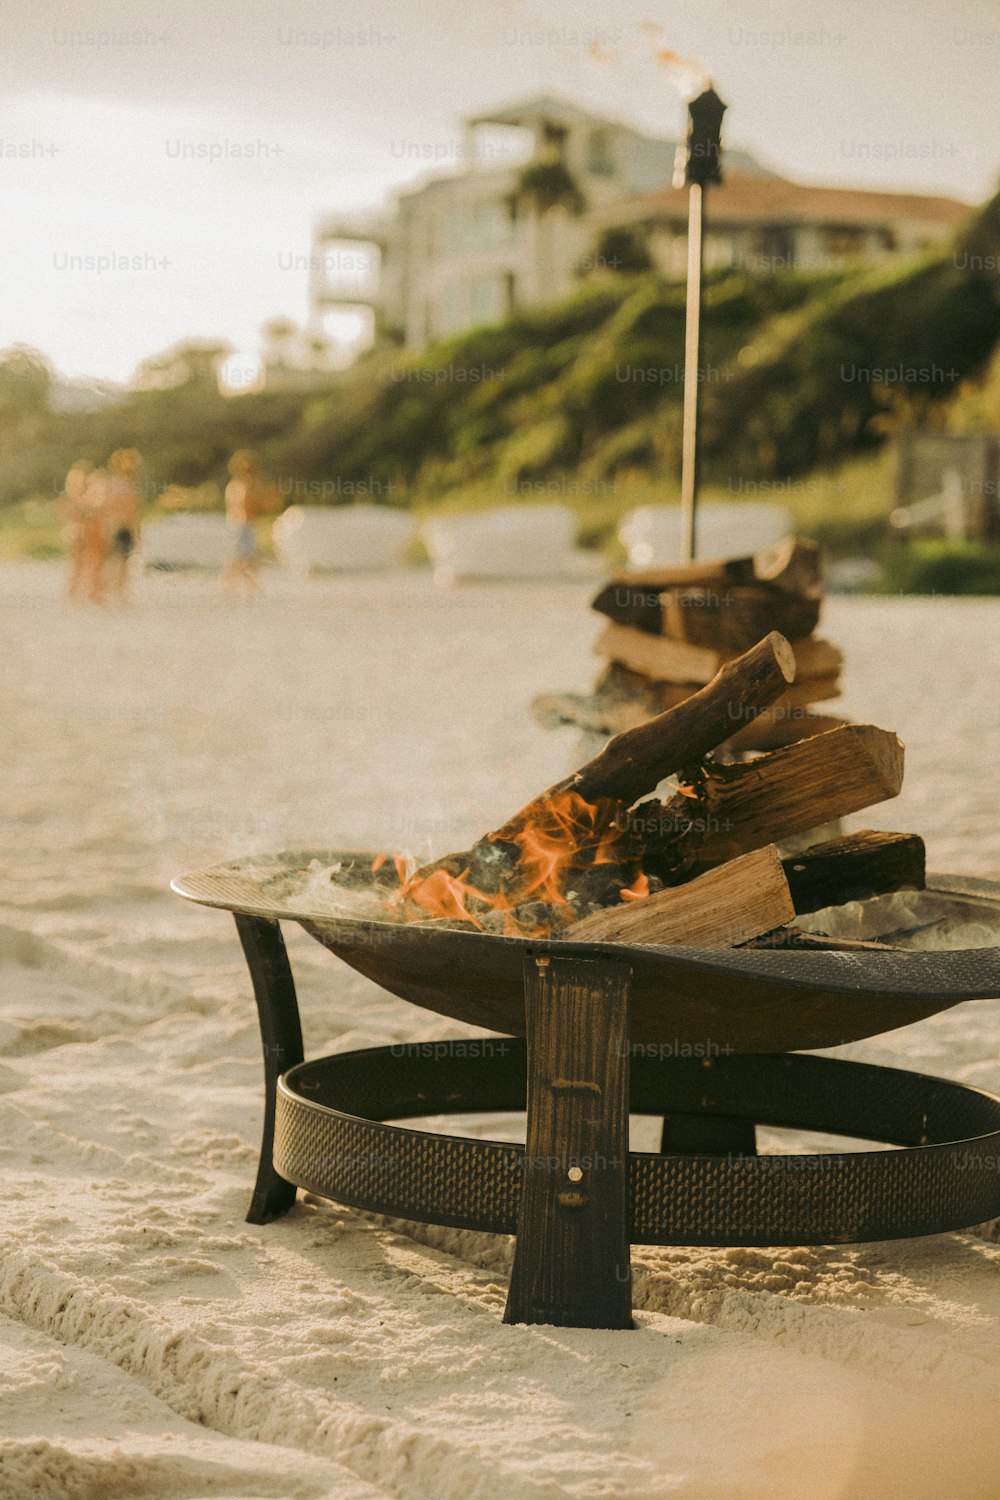 uma fogueira sentada em cima de uma praia de areia